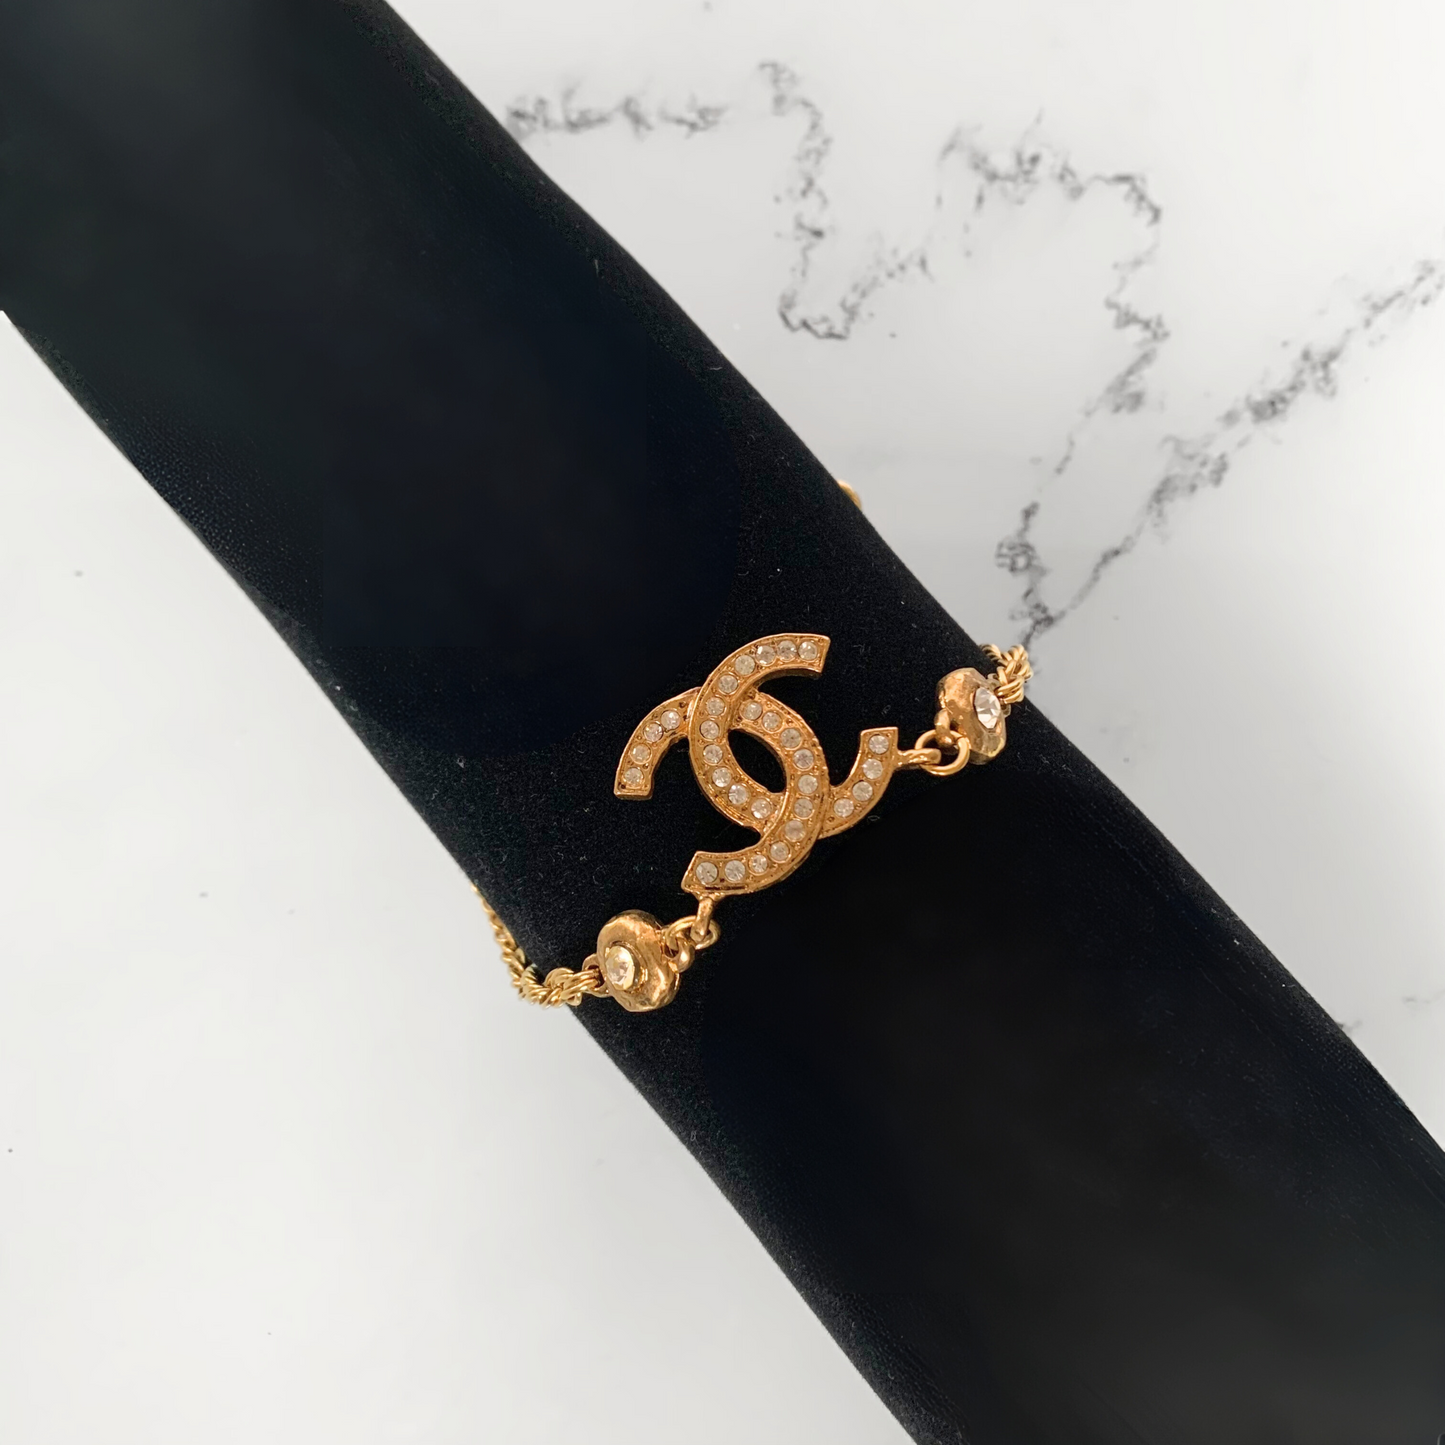 Chanel Chanel Kaulakoru kullattu - Kaulakorut - Etoile Luxury Vintage